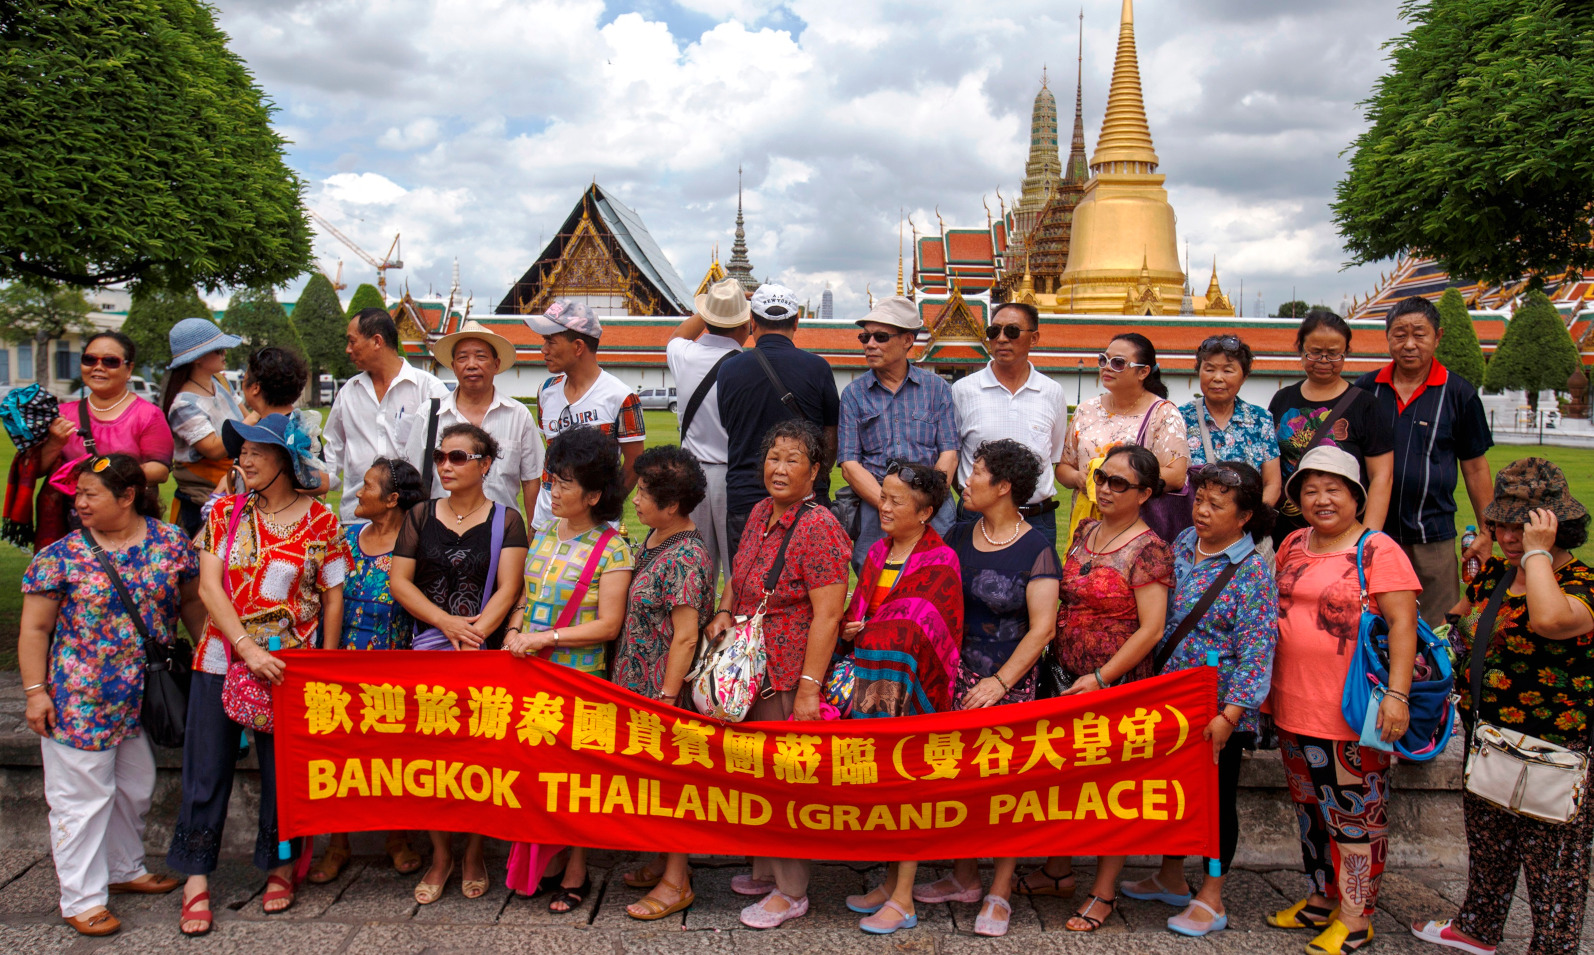 Biar berisik, Thailand rindu turis China